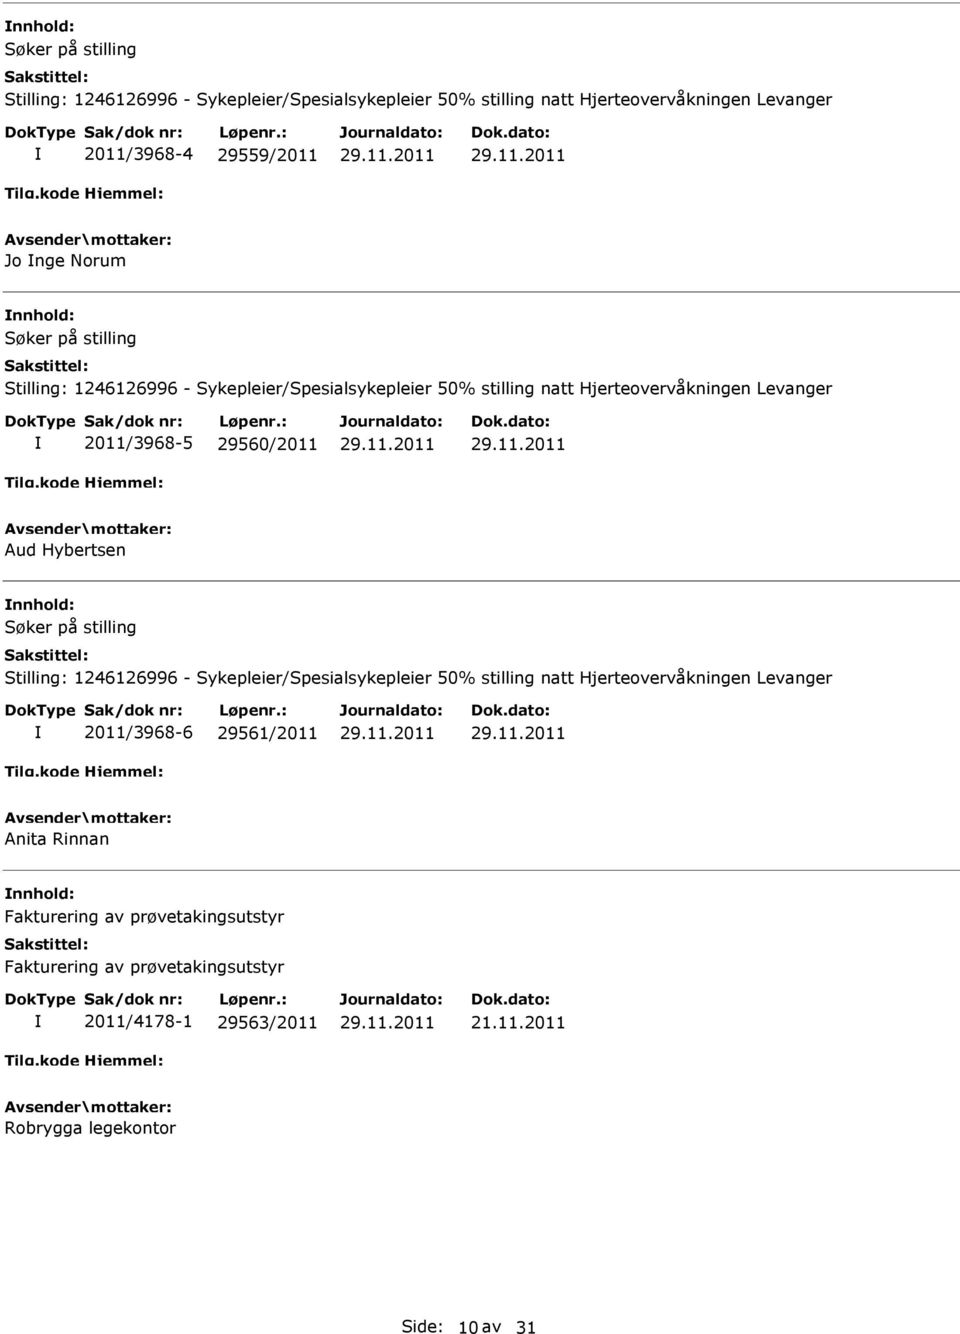 Aud Hybertsen Søker på stilling Stilling: 1246126996 - Sykepleier/Spesialsykepleier 50% stilling natt Hjerteovervåkningen Levanger 2011/3968-6